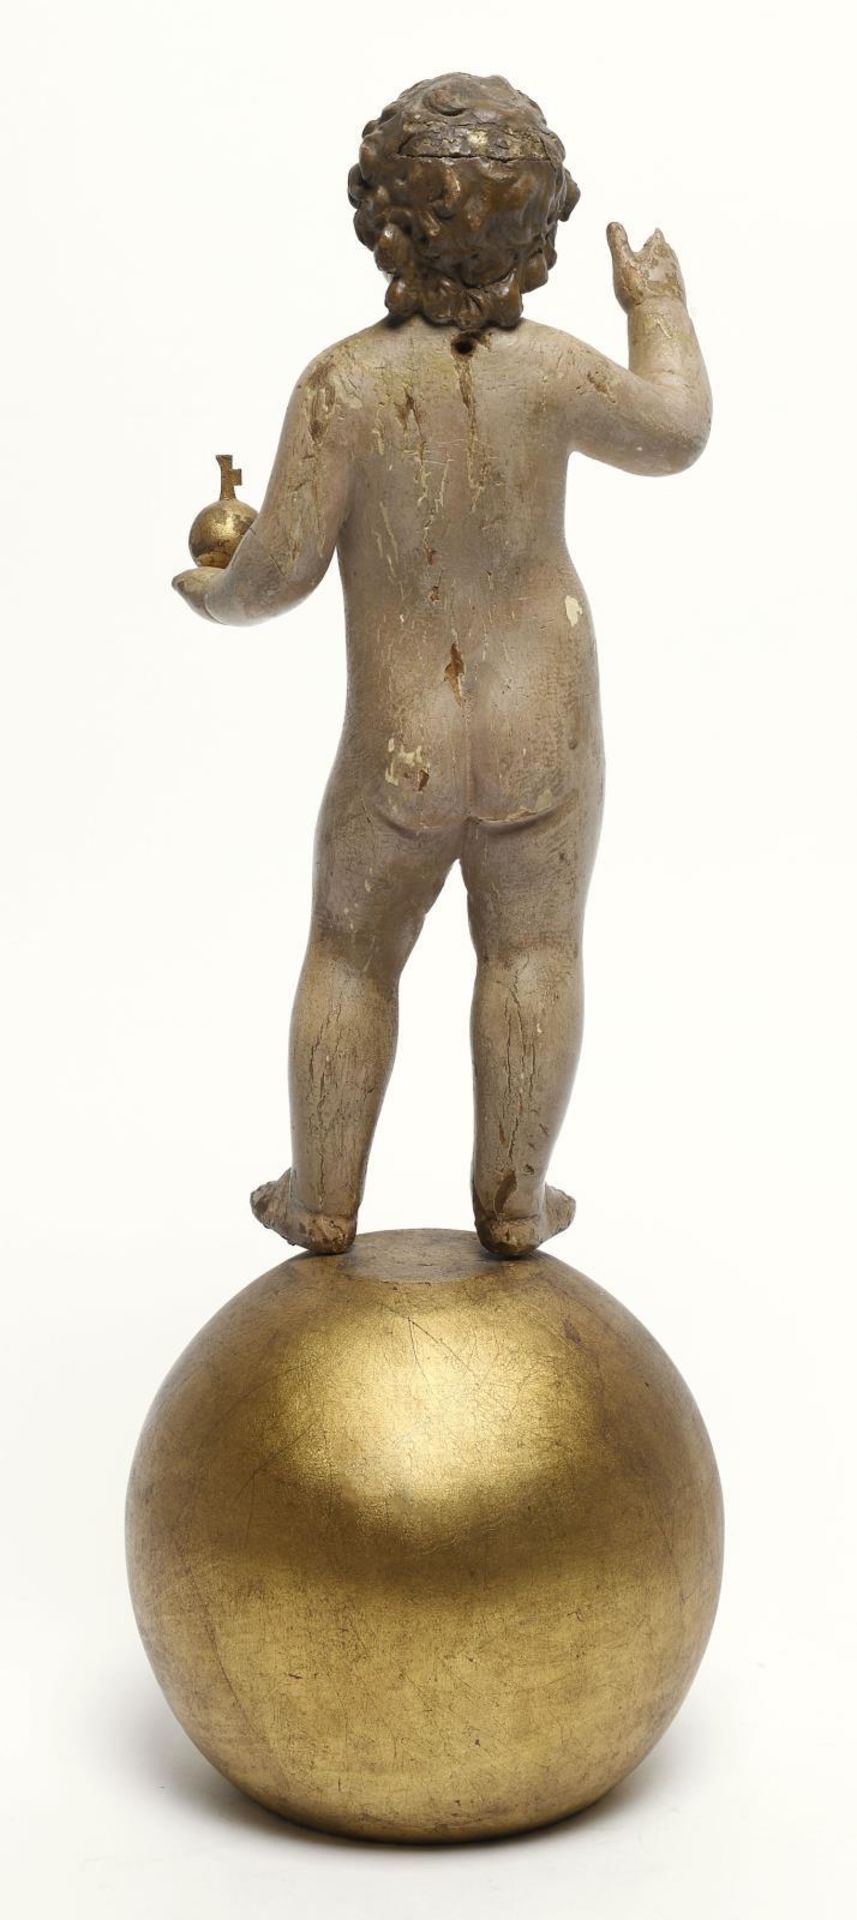 Bambino Gesù auf Weltkugel stehend. Italien, 18./19. Jh. | Holz, geschnitzt. Farb- und Goldfassun... - Image 2 of 2